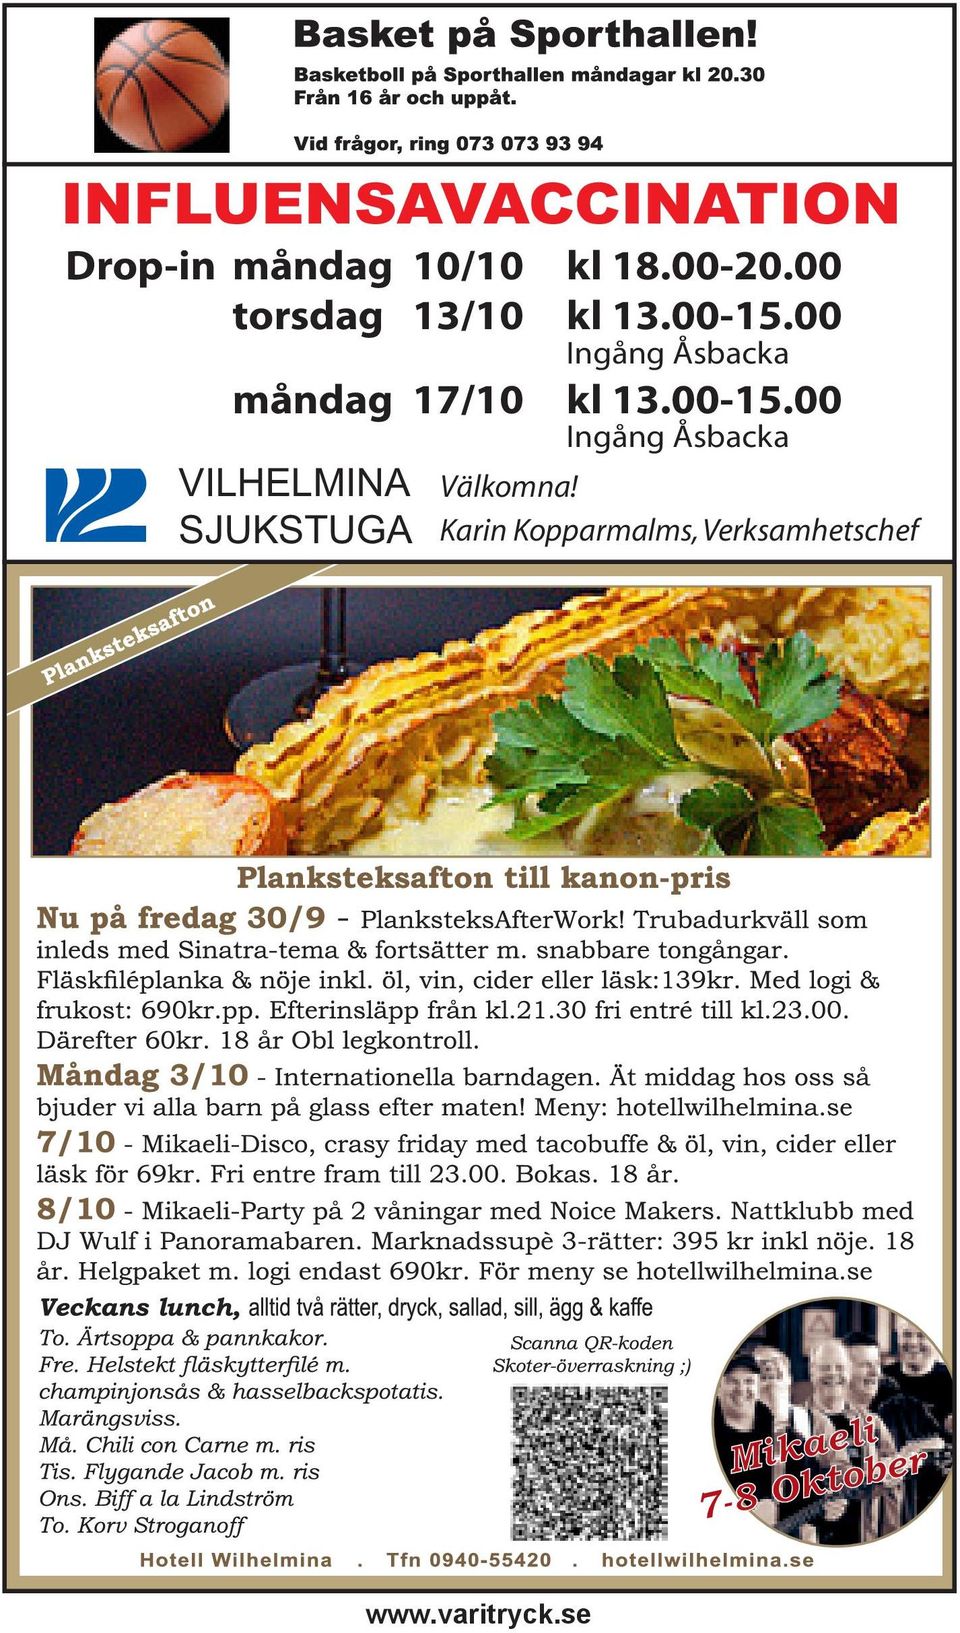 00 Ingång Åsbacka måndag 17/10 kl 13.00-15.